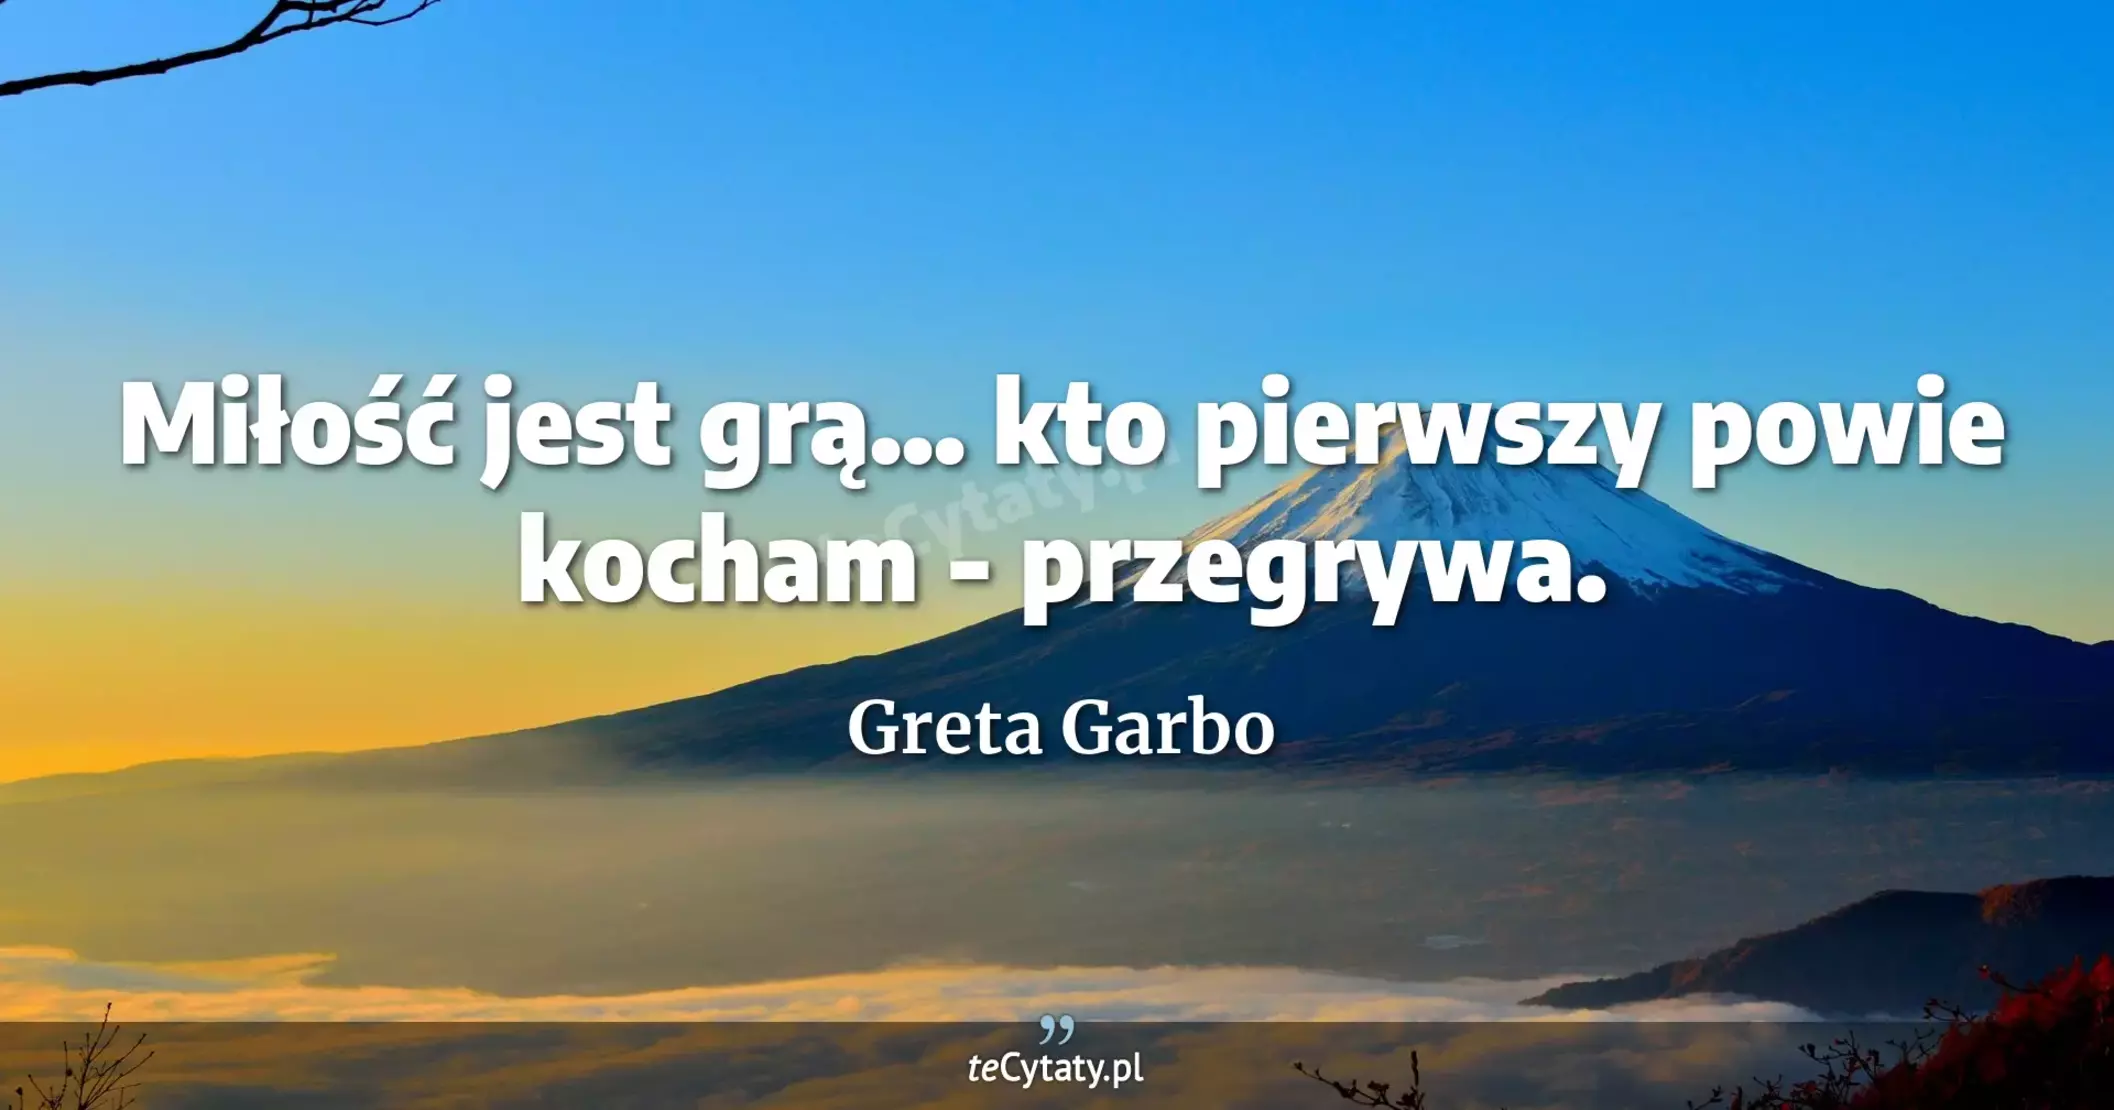 Miłość jest grą... kto pierwszy powie kocham - przegrywa. - Greta Garbo